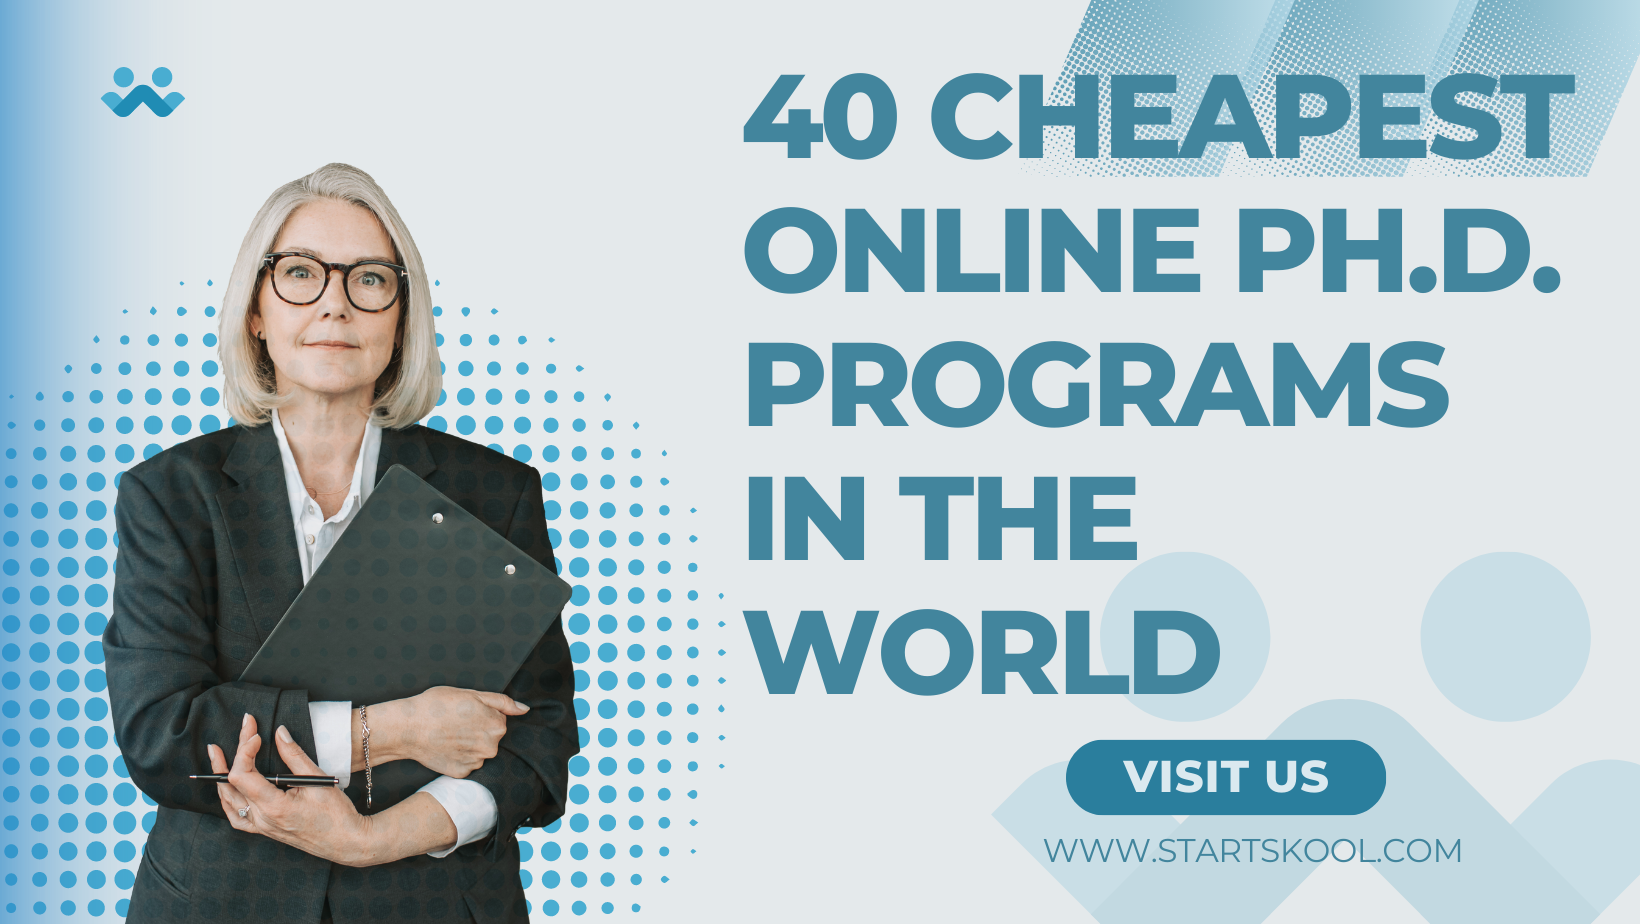 cheapest online phd programs uk